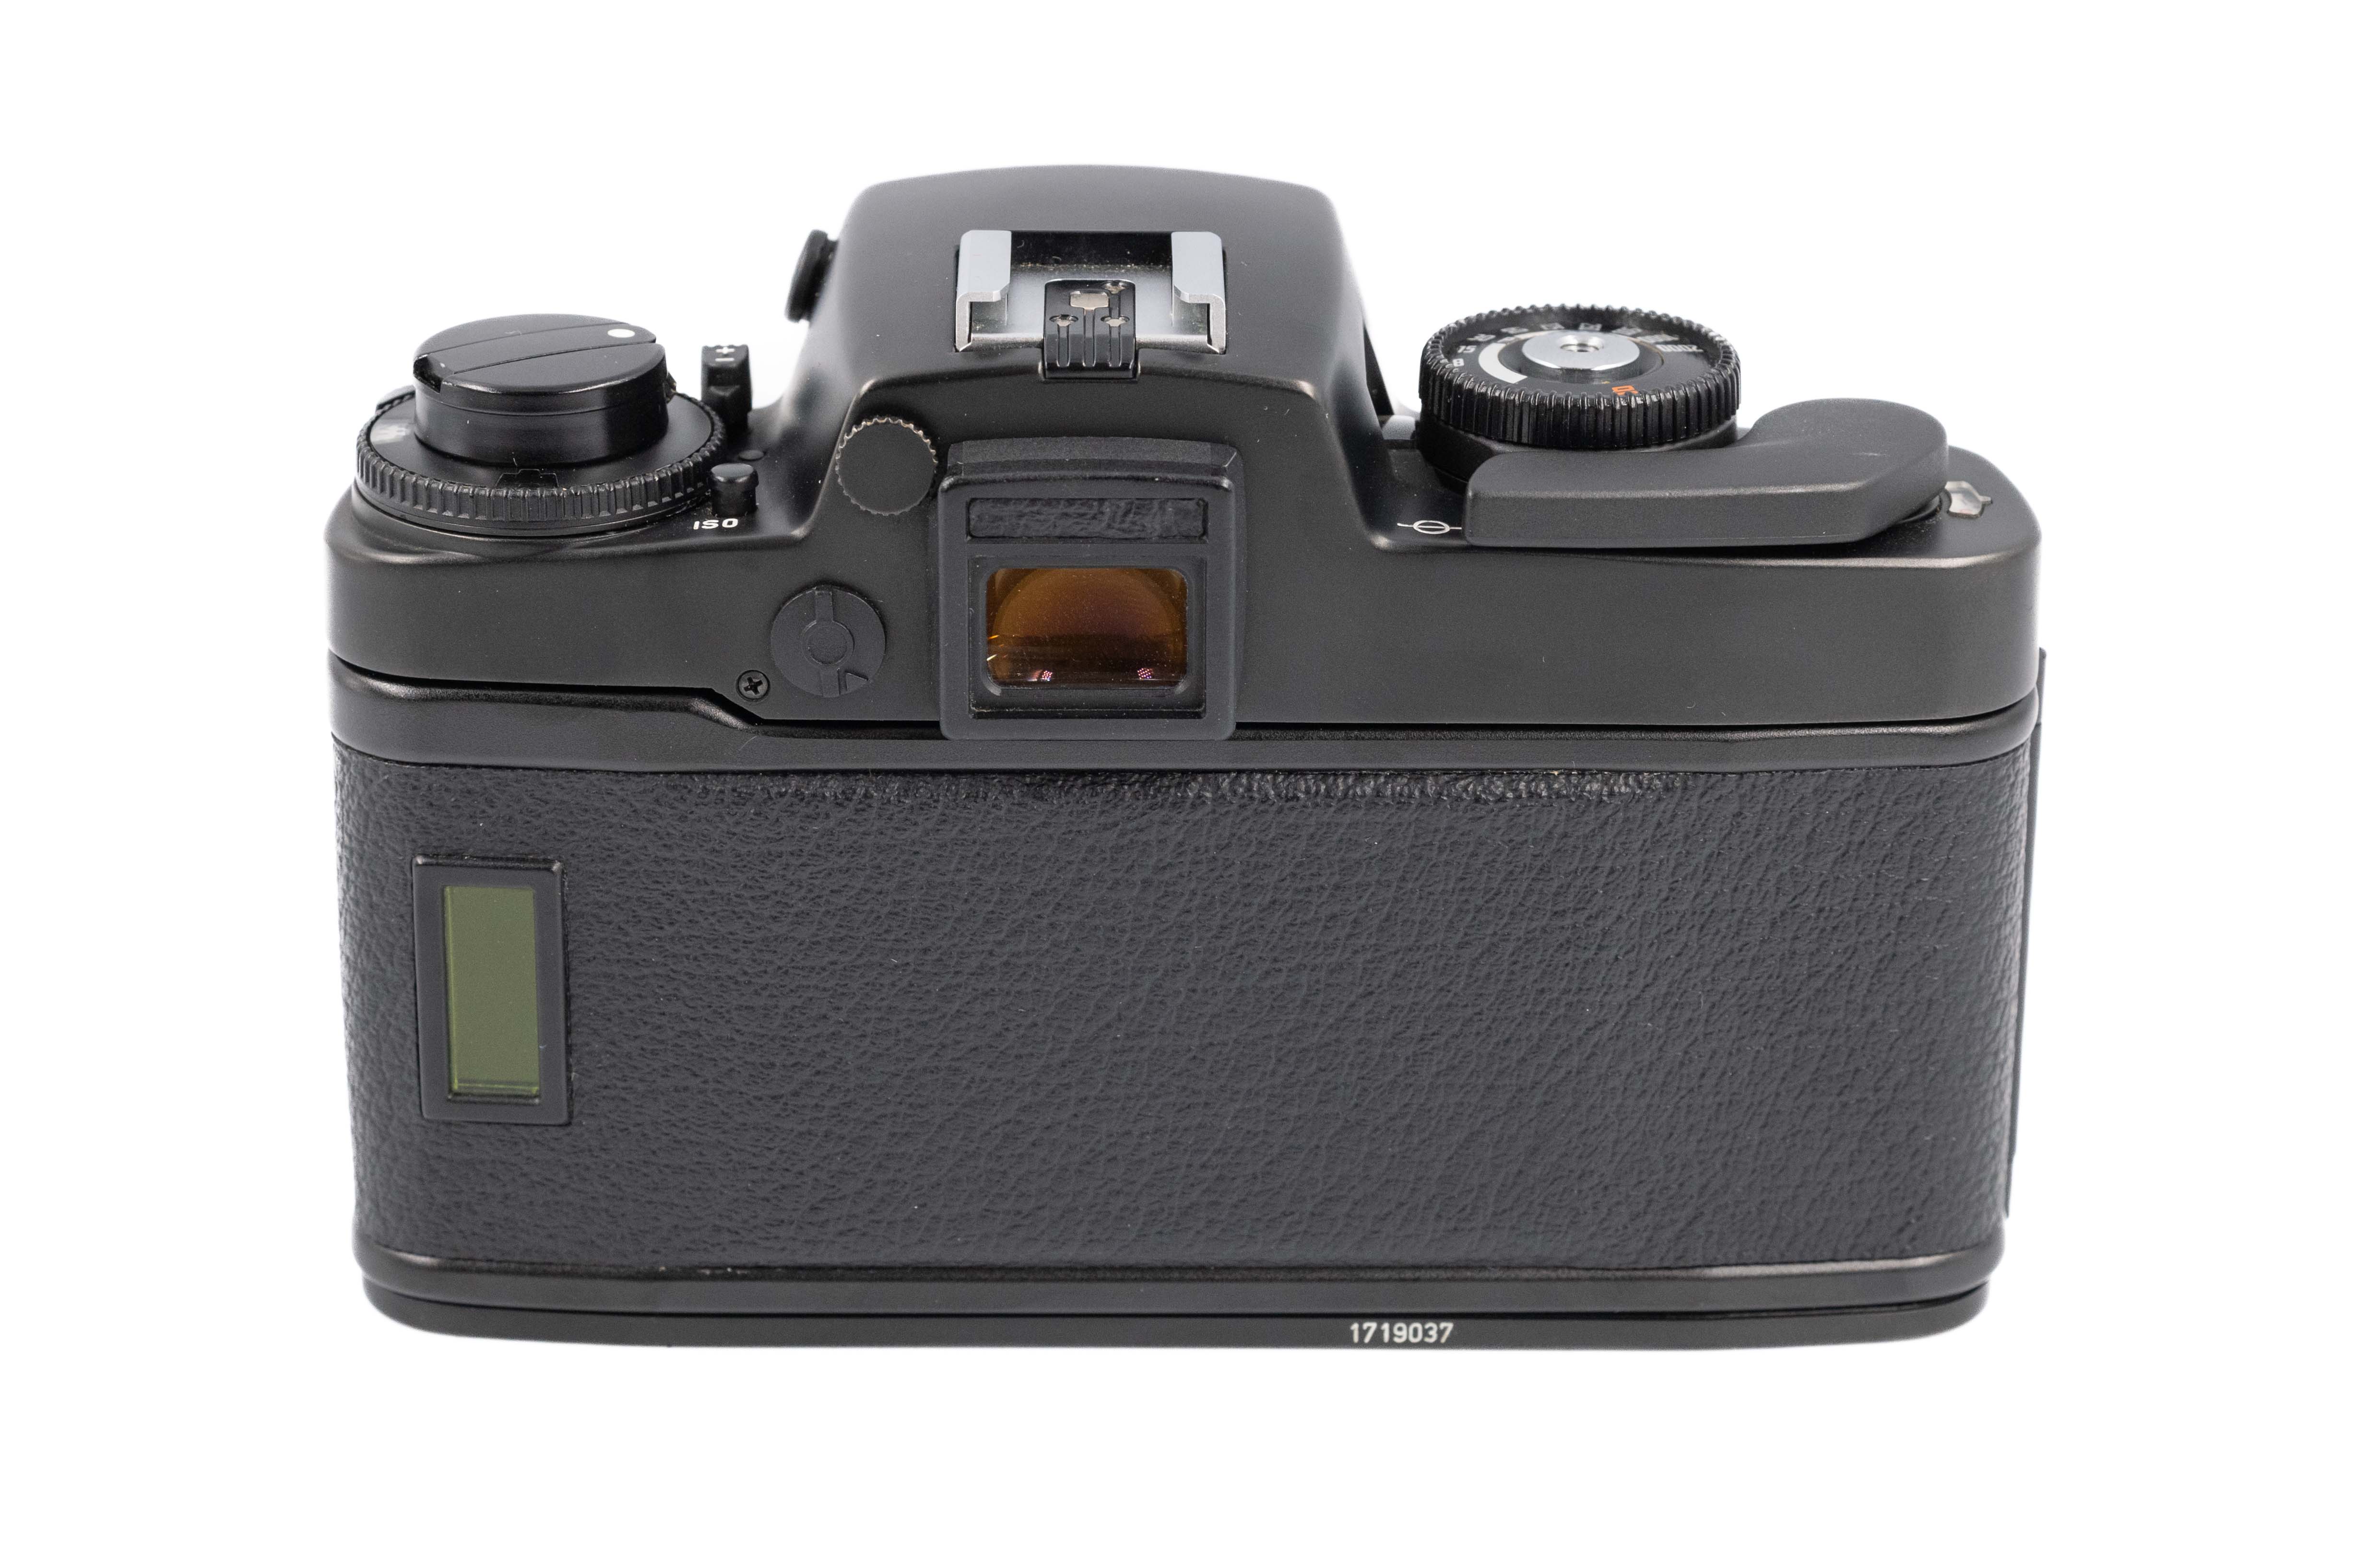 Leica R5 Black 10060